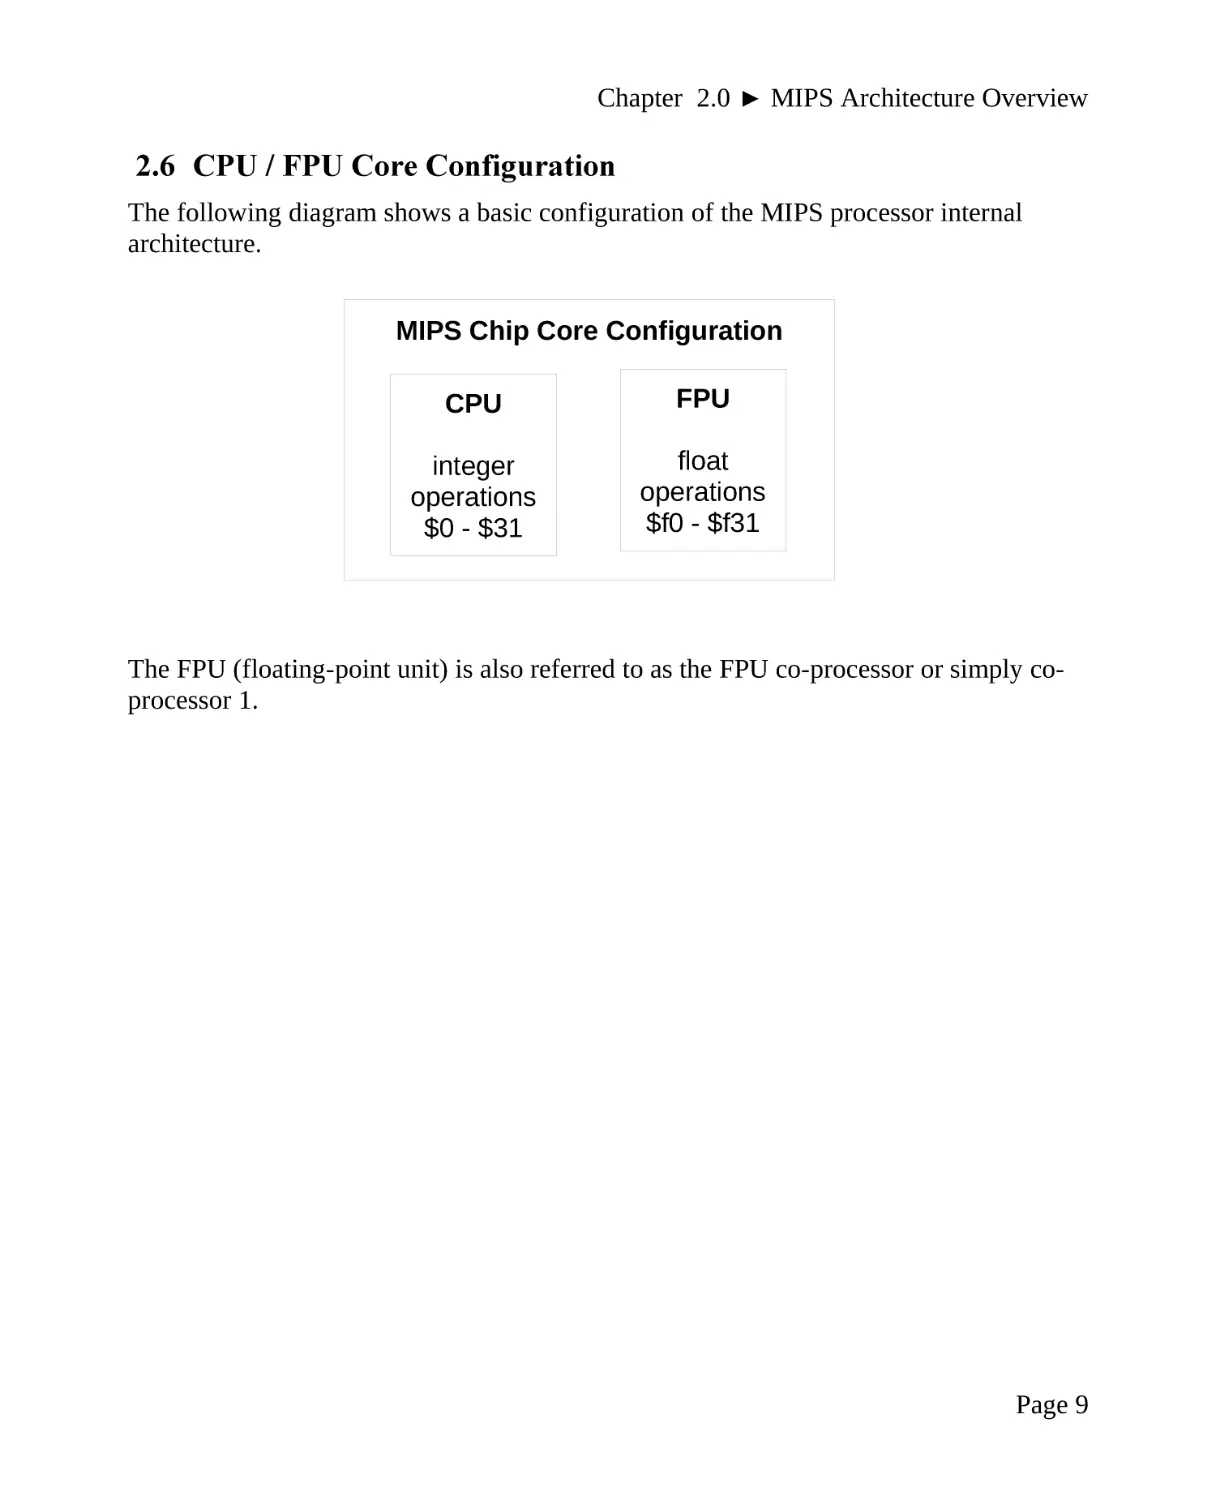 2.6 CPU / FPU Core Configuration